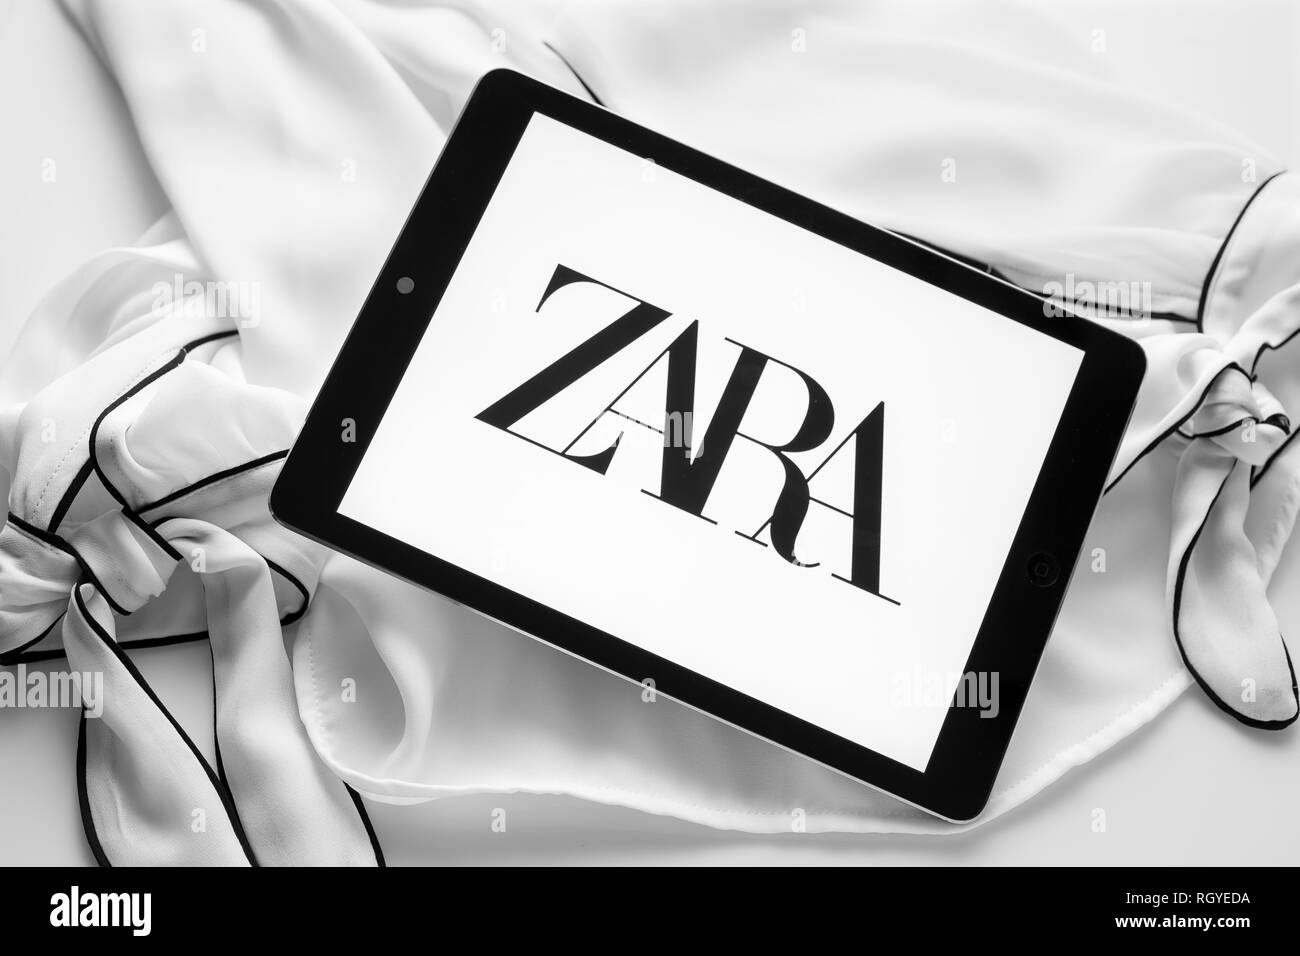 Galizien, Spanien; 30. Januar 2019: Zara neues Logo. Tablet-PC mit neuen curvy Schrift Logo auf Schwarz und weiße Bluse Stockfoto